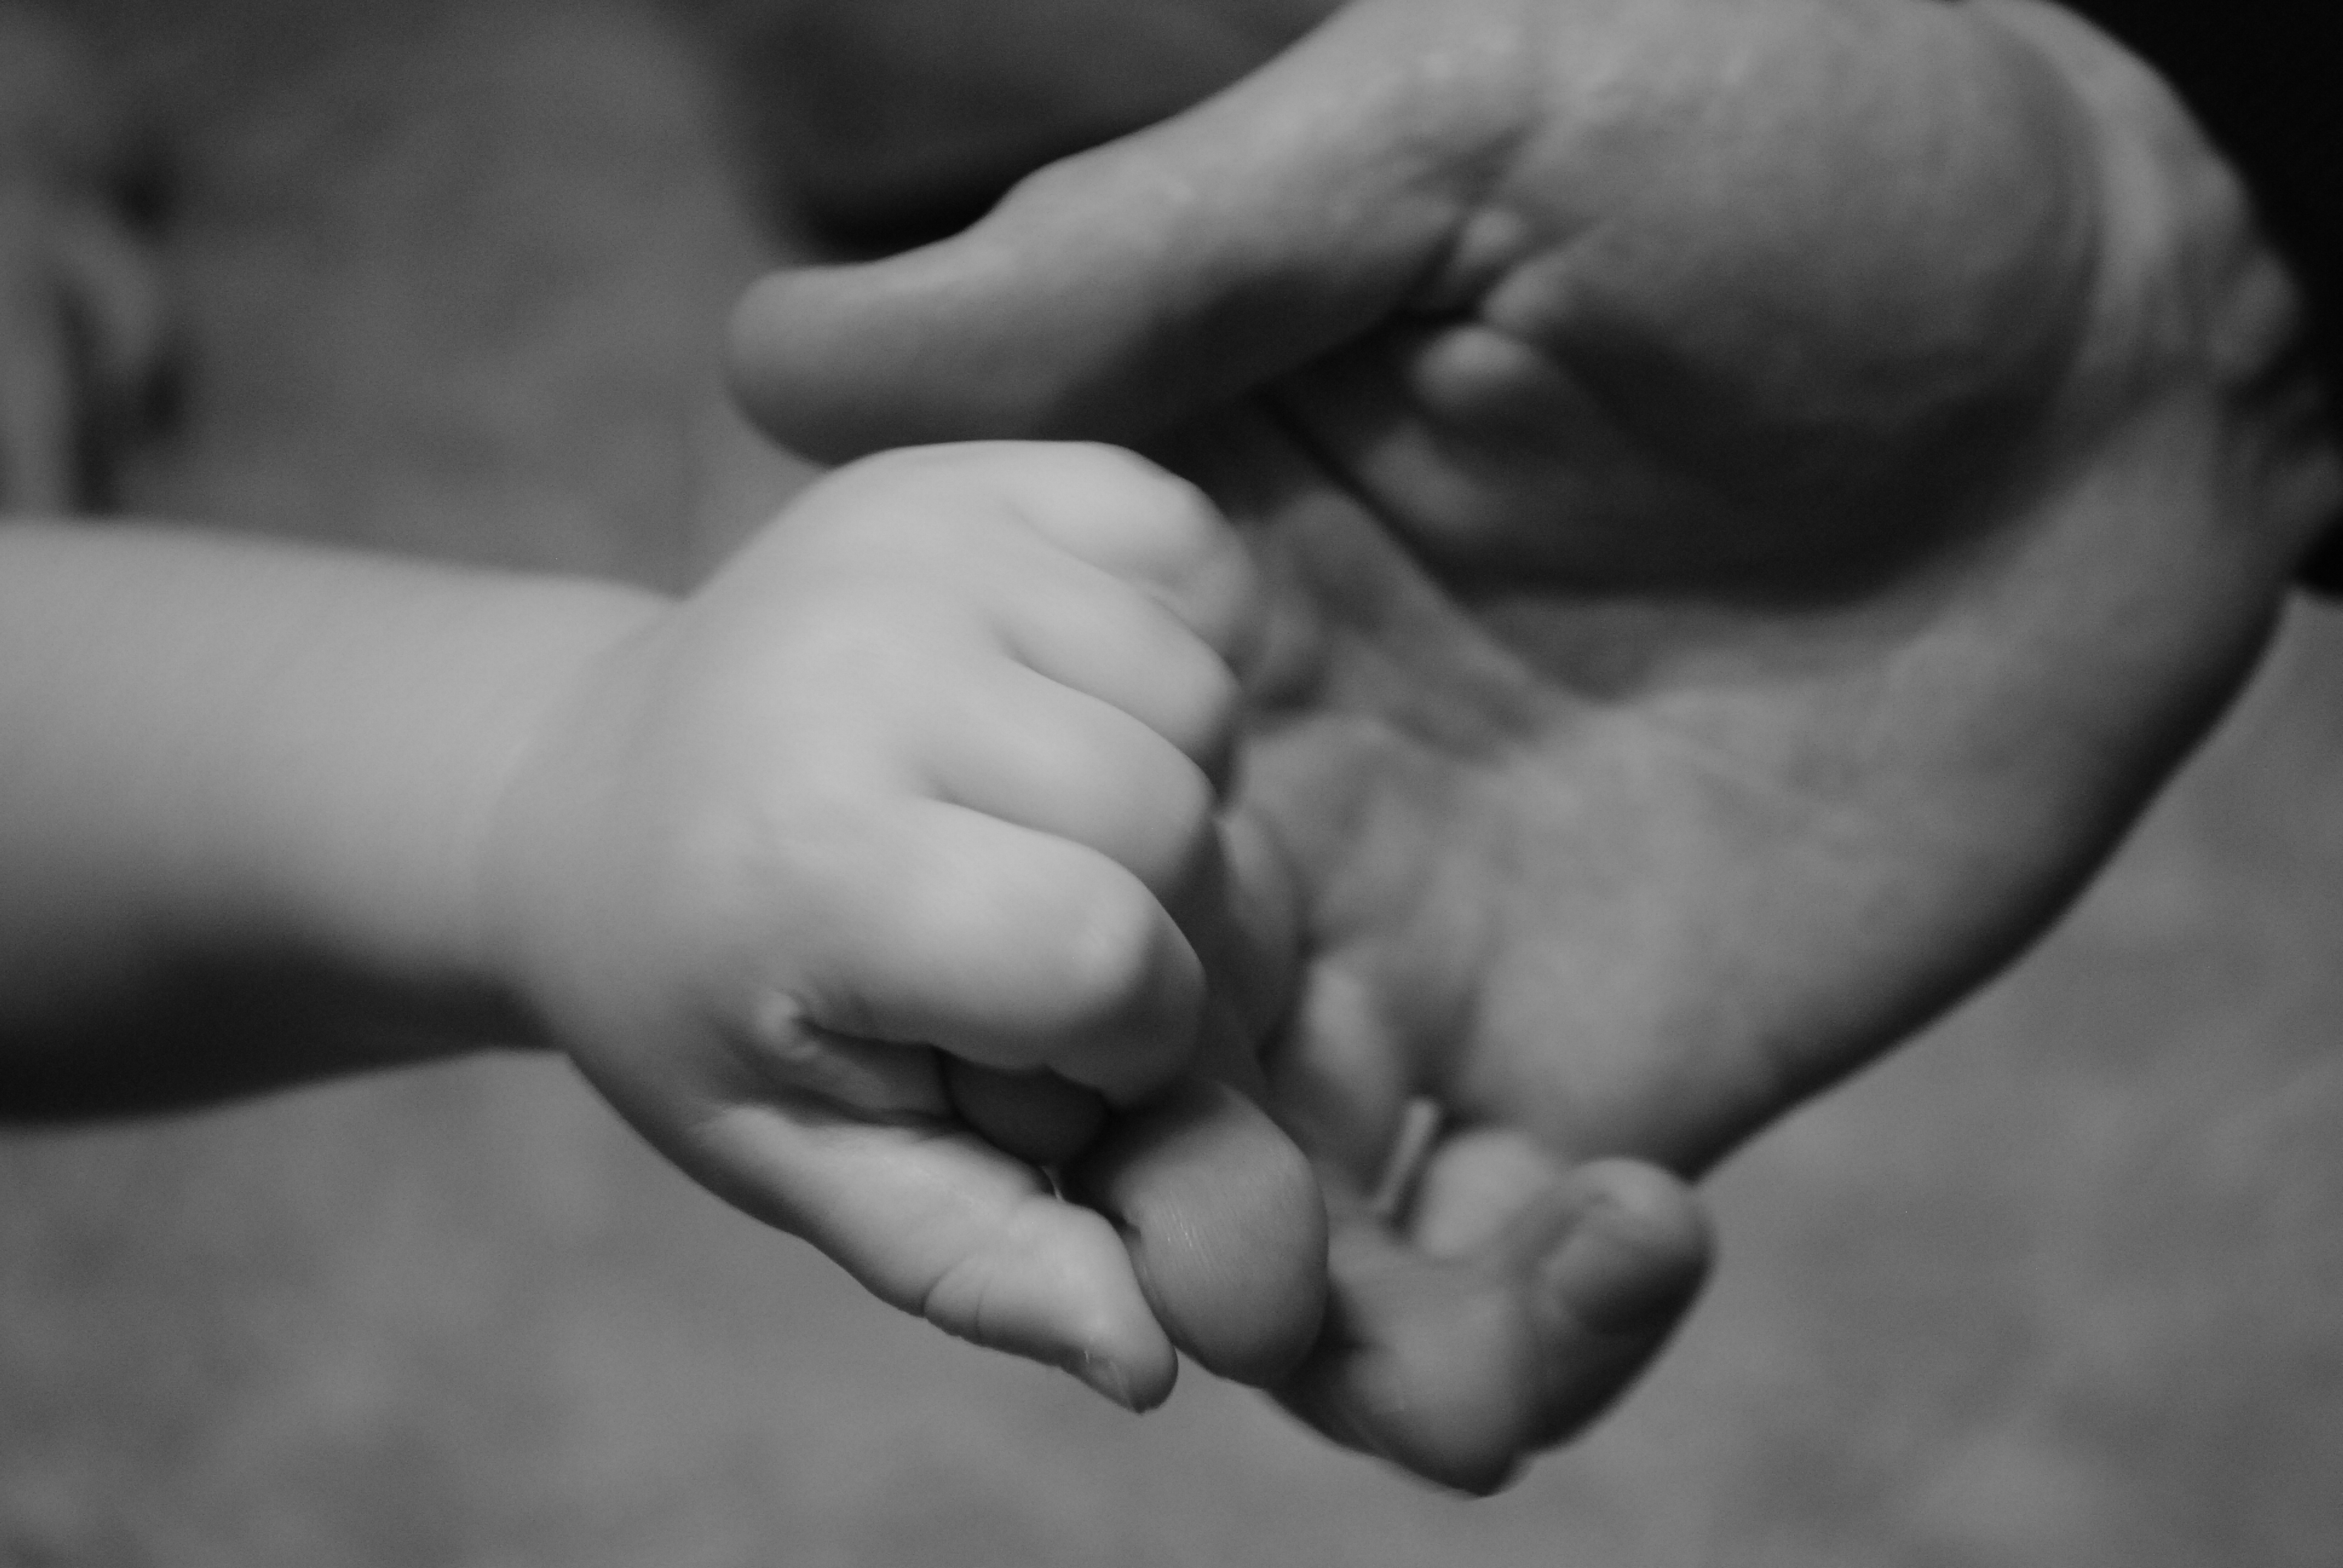 Узнал что будет папой. Мужская и детская рука. Рука ребенка в руке папы. Мужская рука с рукой ребенка. Папа с сыном на руках.